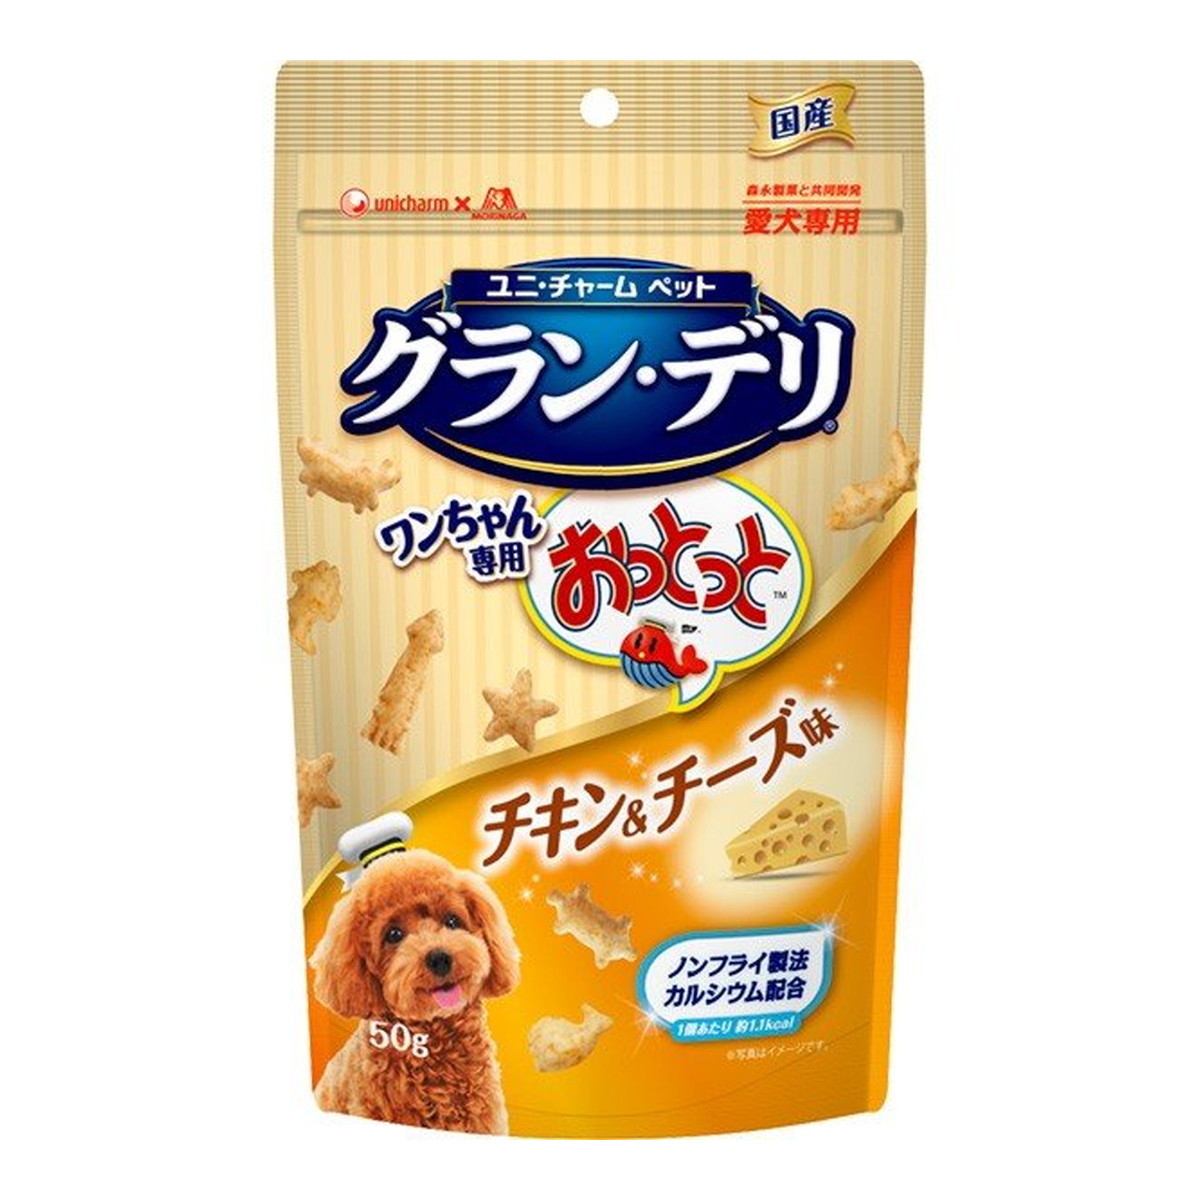 unicharm グラン・デリ ワンちゃん専用おっとっと チャック袋タイプ チキン＆チーズ味 50g×2個 犬用おやつ、ガムの商品画像